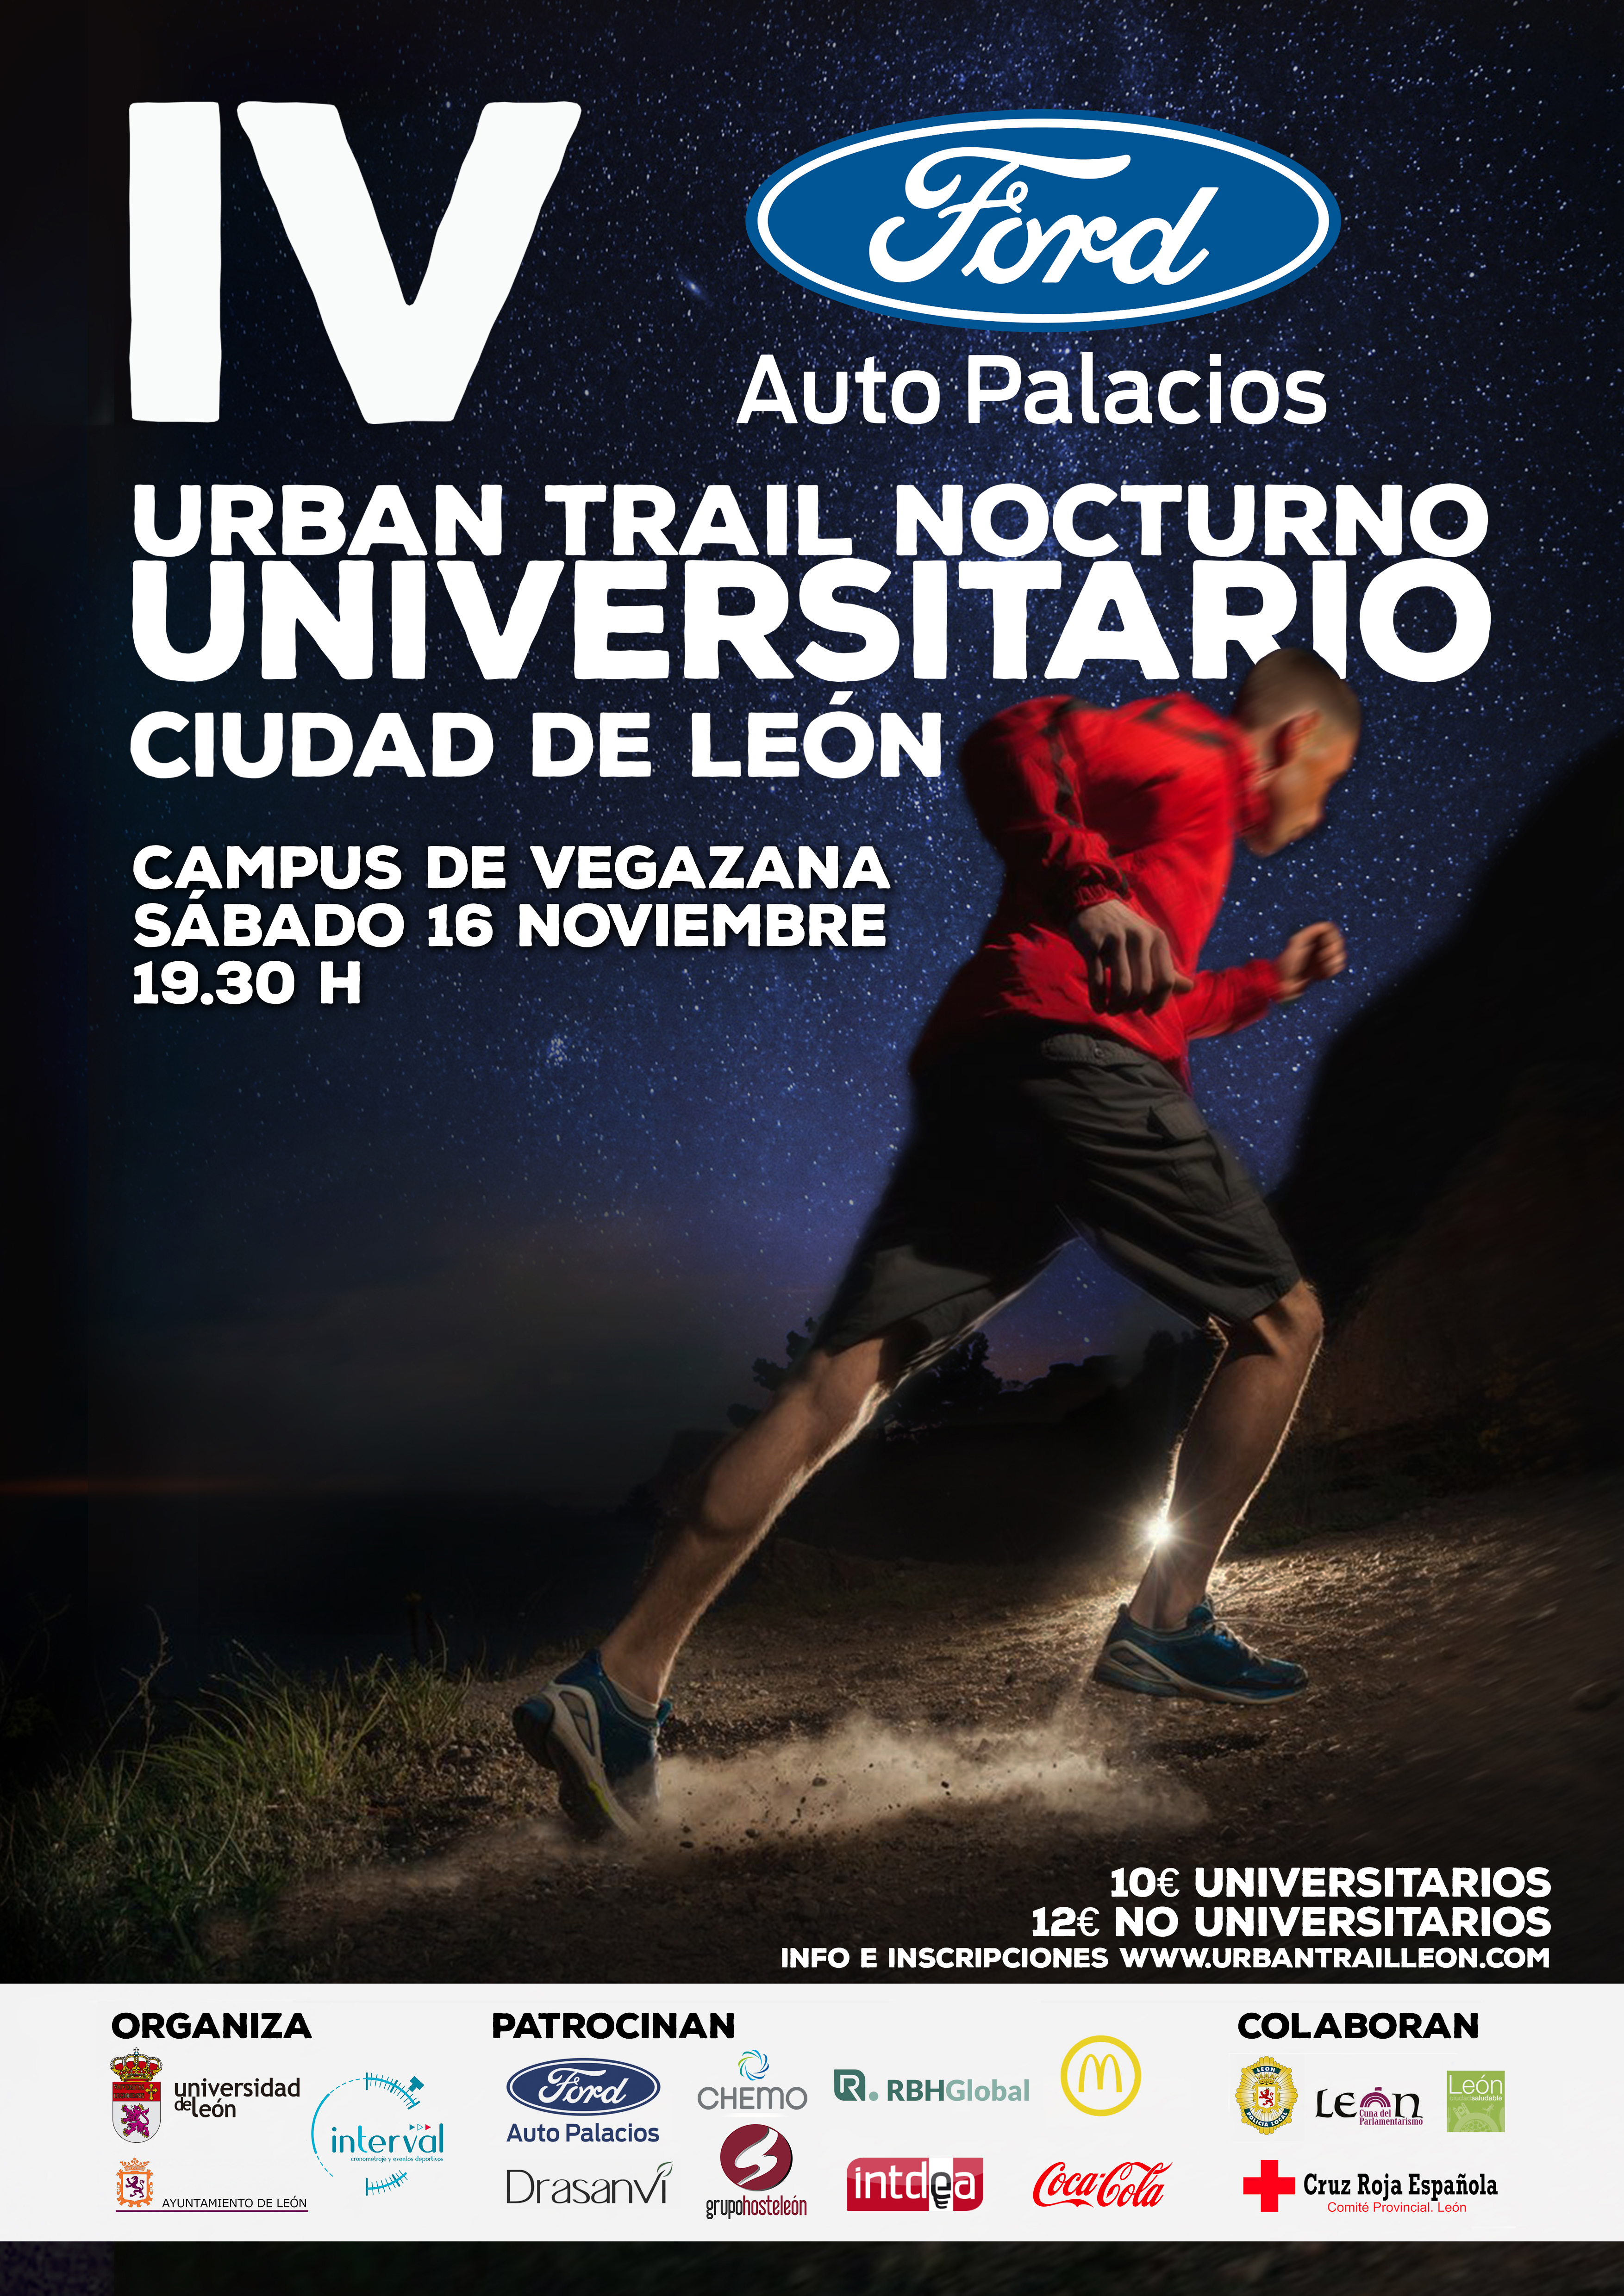 IV Urban Trail Nocturno Universitario Ford Auto Palacios Ciudad de León